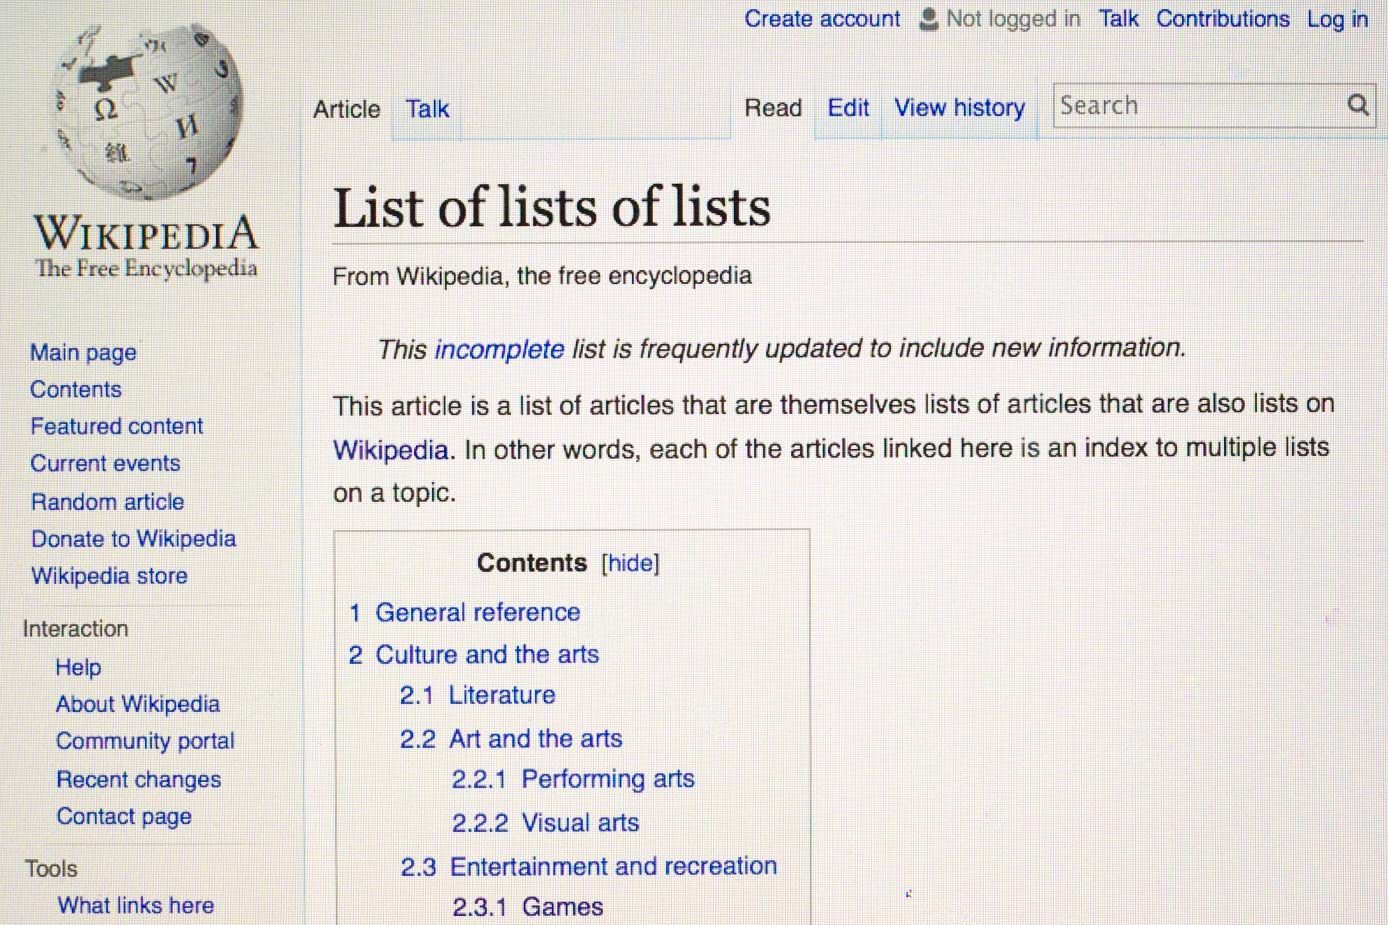 Cara culture - Wikipedia